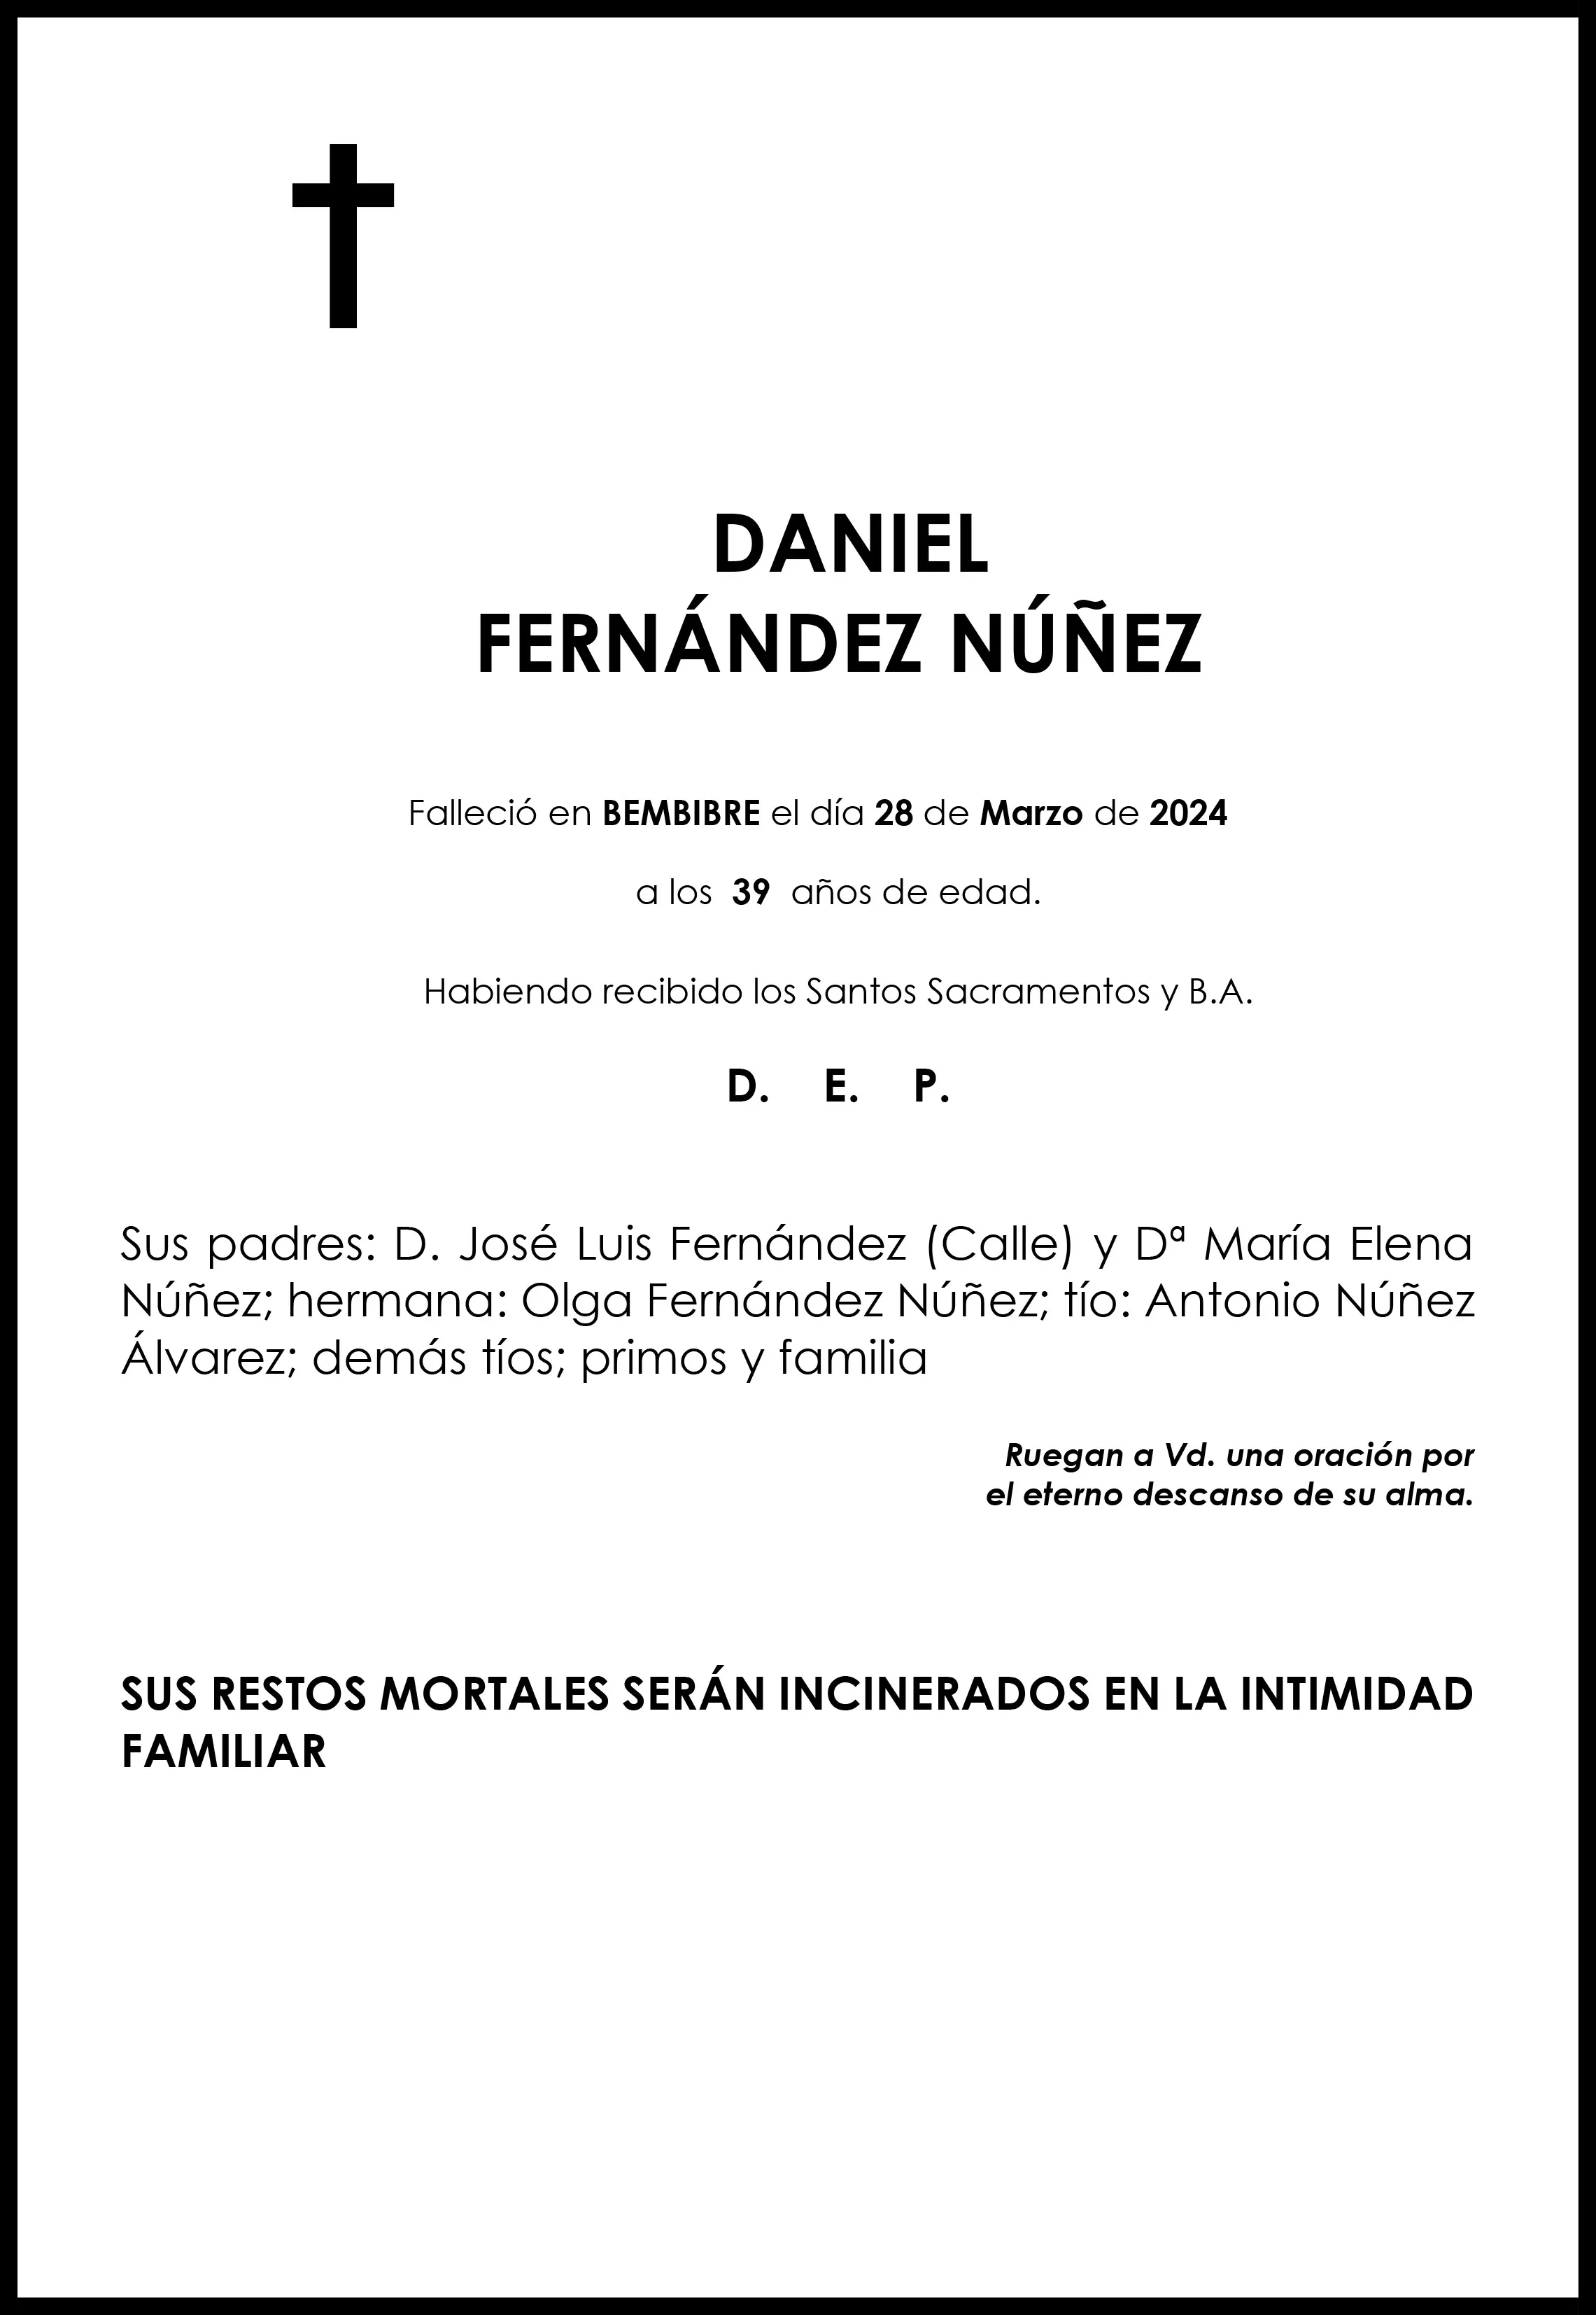 DANIEL FERNANDEZ NUÑEZ